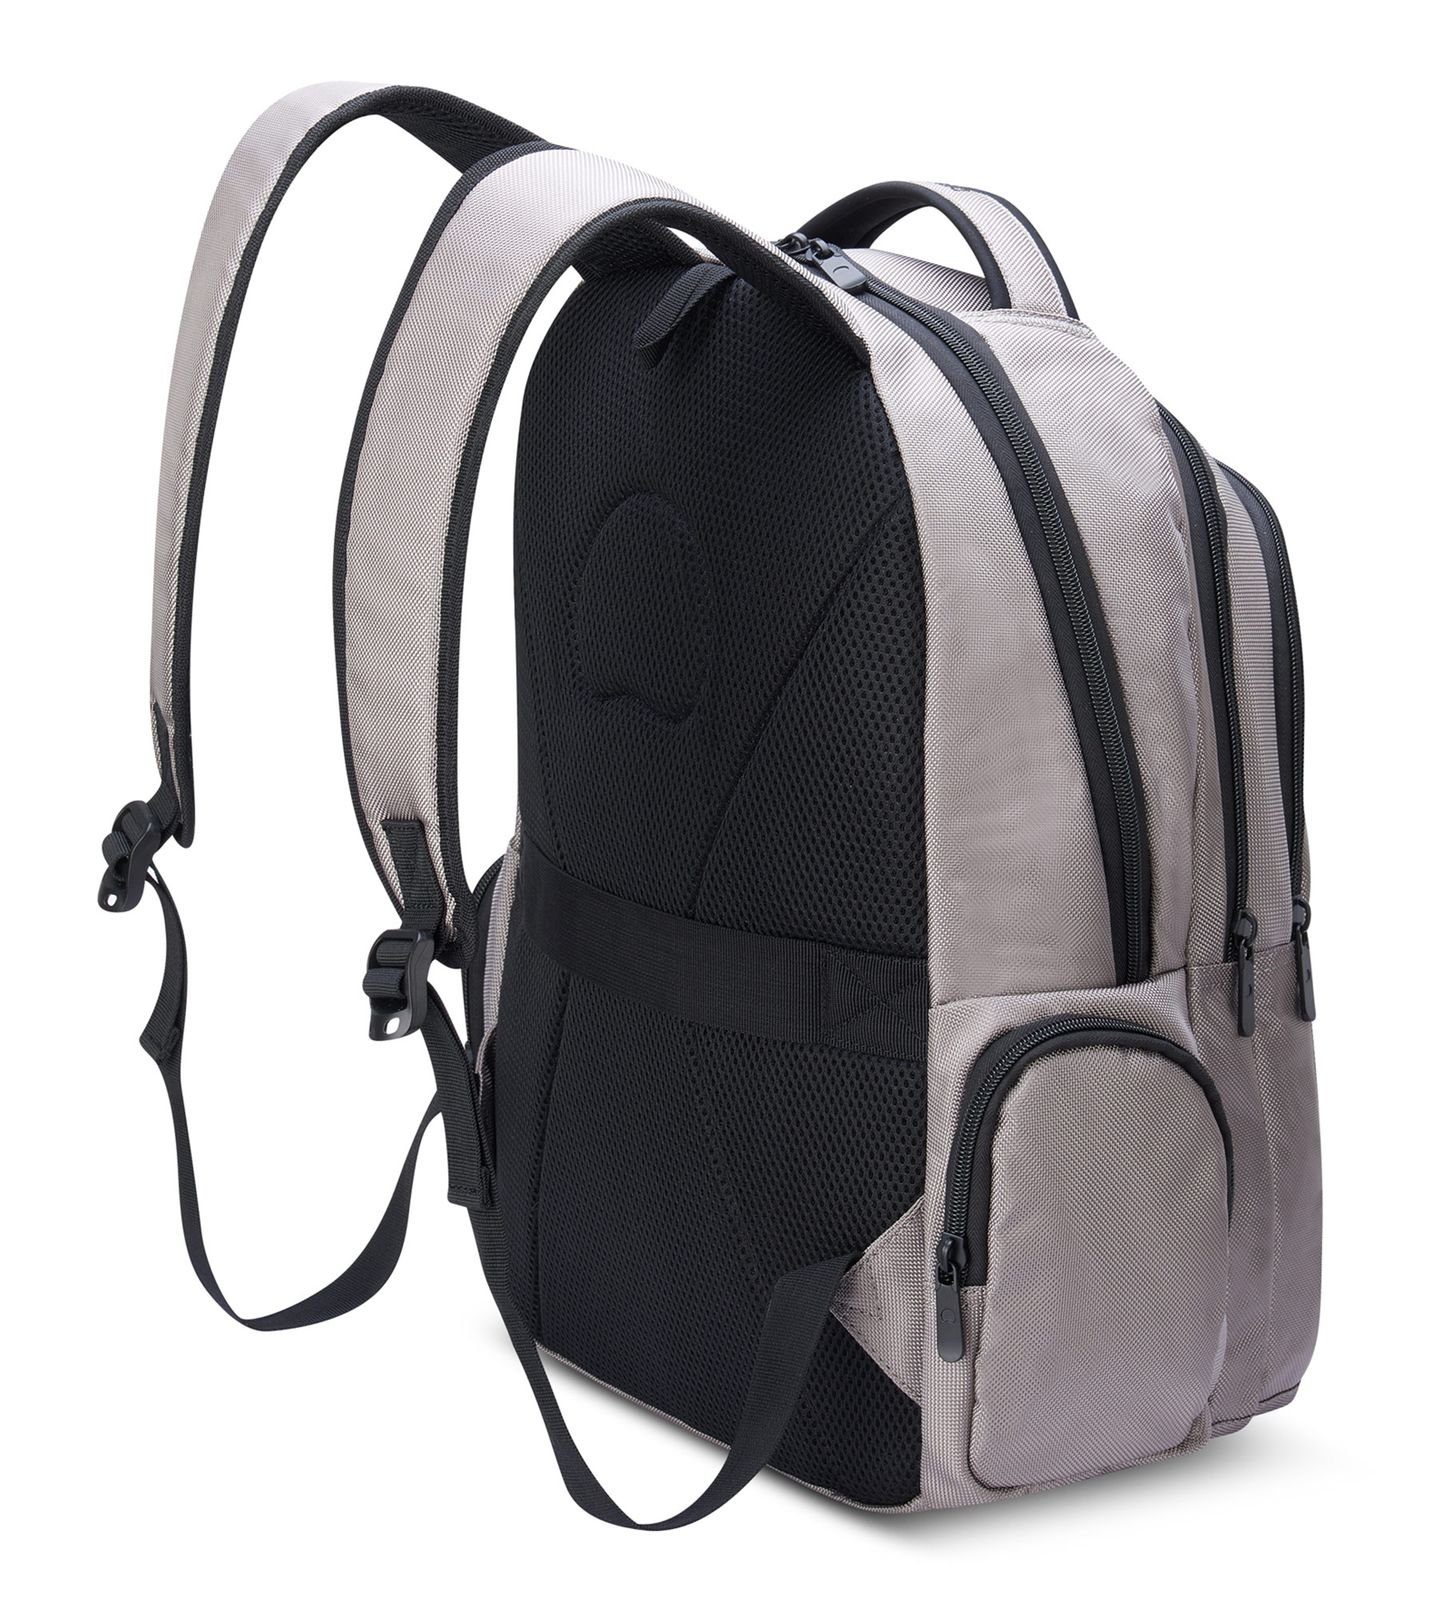 Element Grey Rucksack Backpacks Delsey